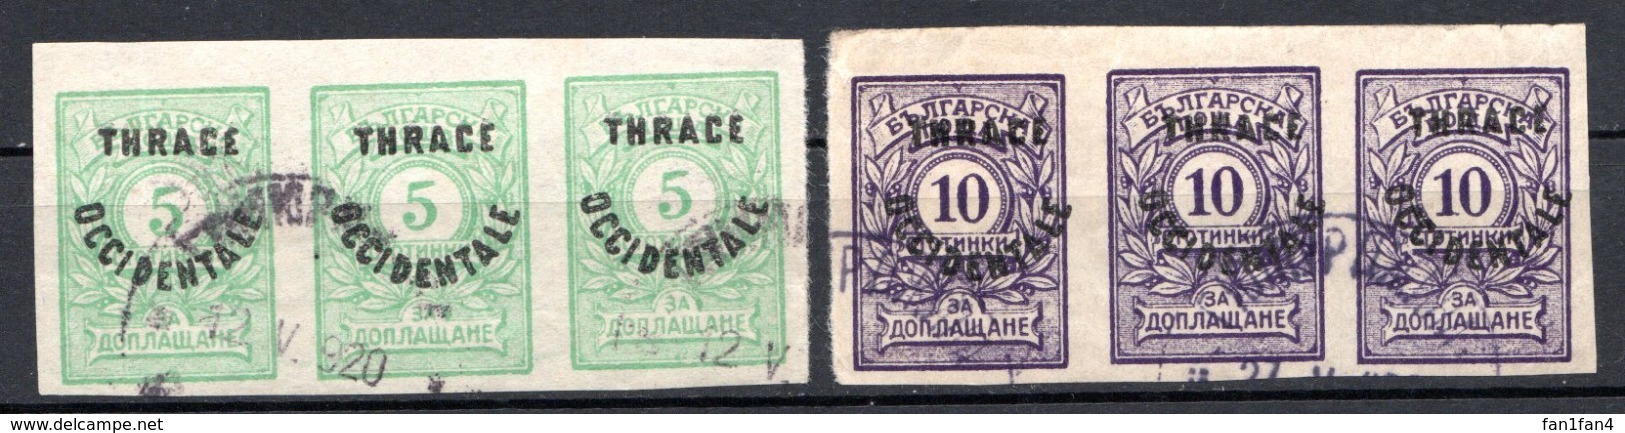 THRACE - (Occupation Interalliée) - 1920 - Taxe - Bandes De 3 Ex. Des N° 4 à 7 - (Lot De 4 Valeurs Différentes) - Gebraucht